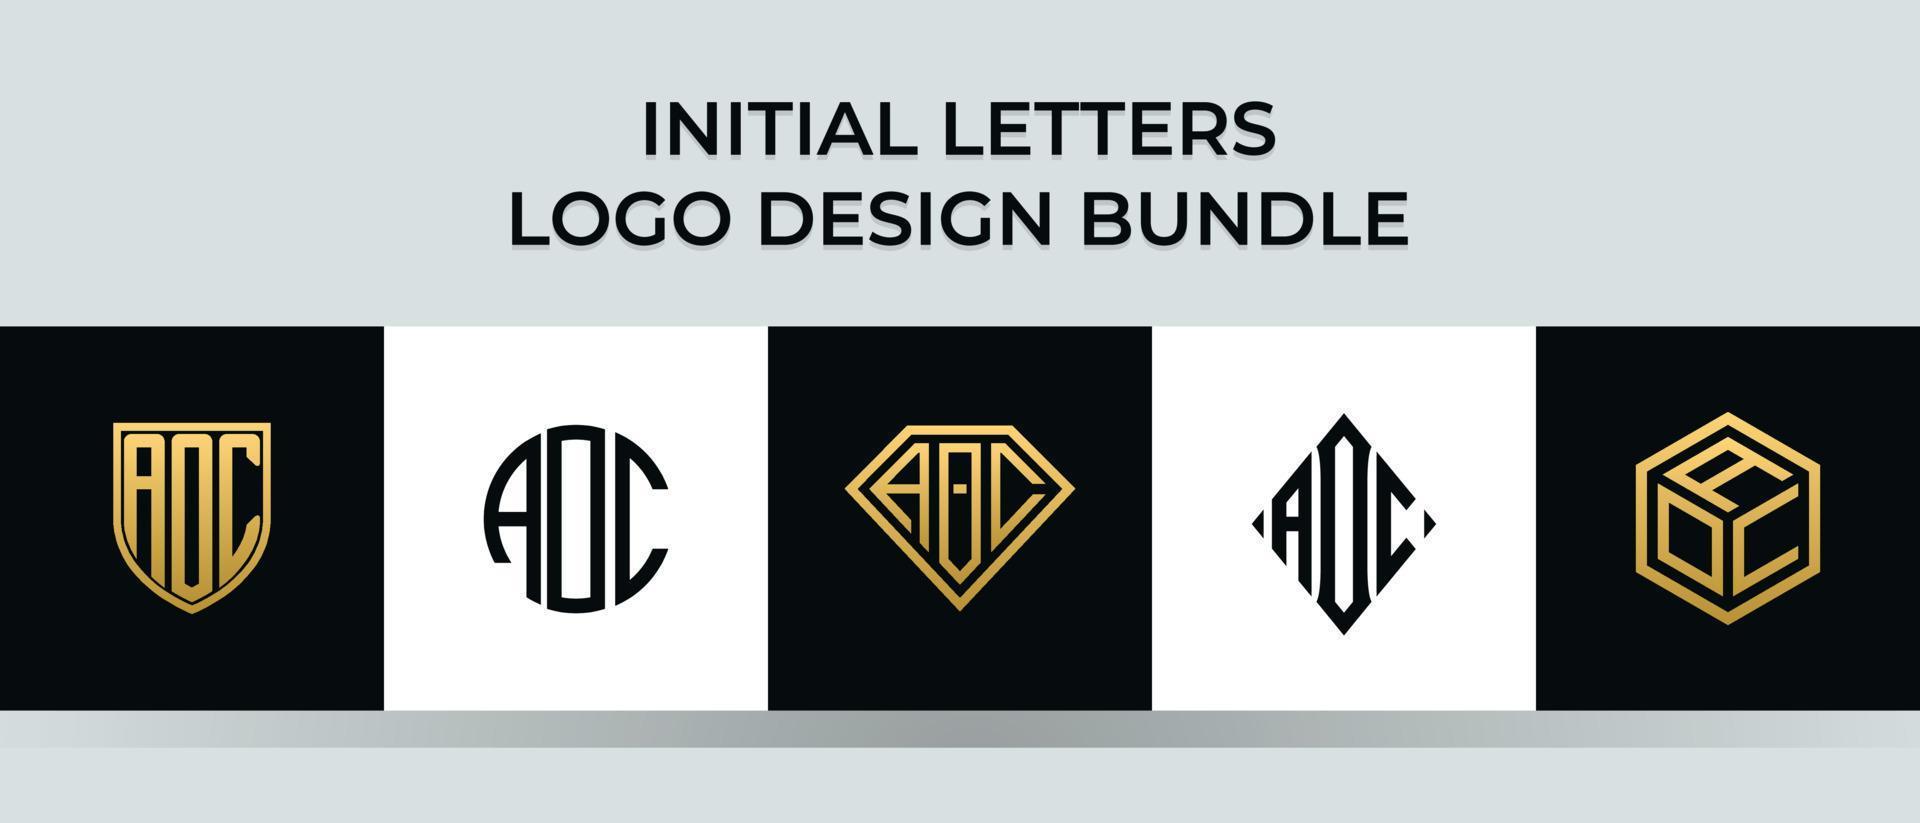 letras iniciales aoc logo diseños paquete vector